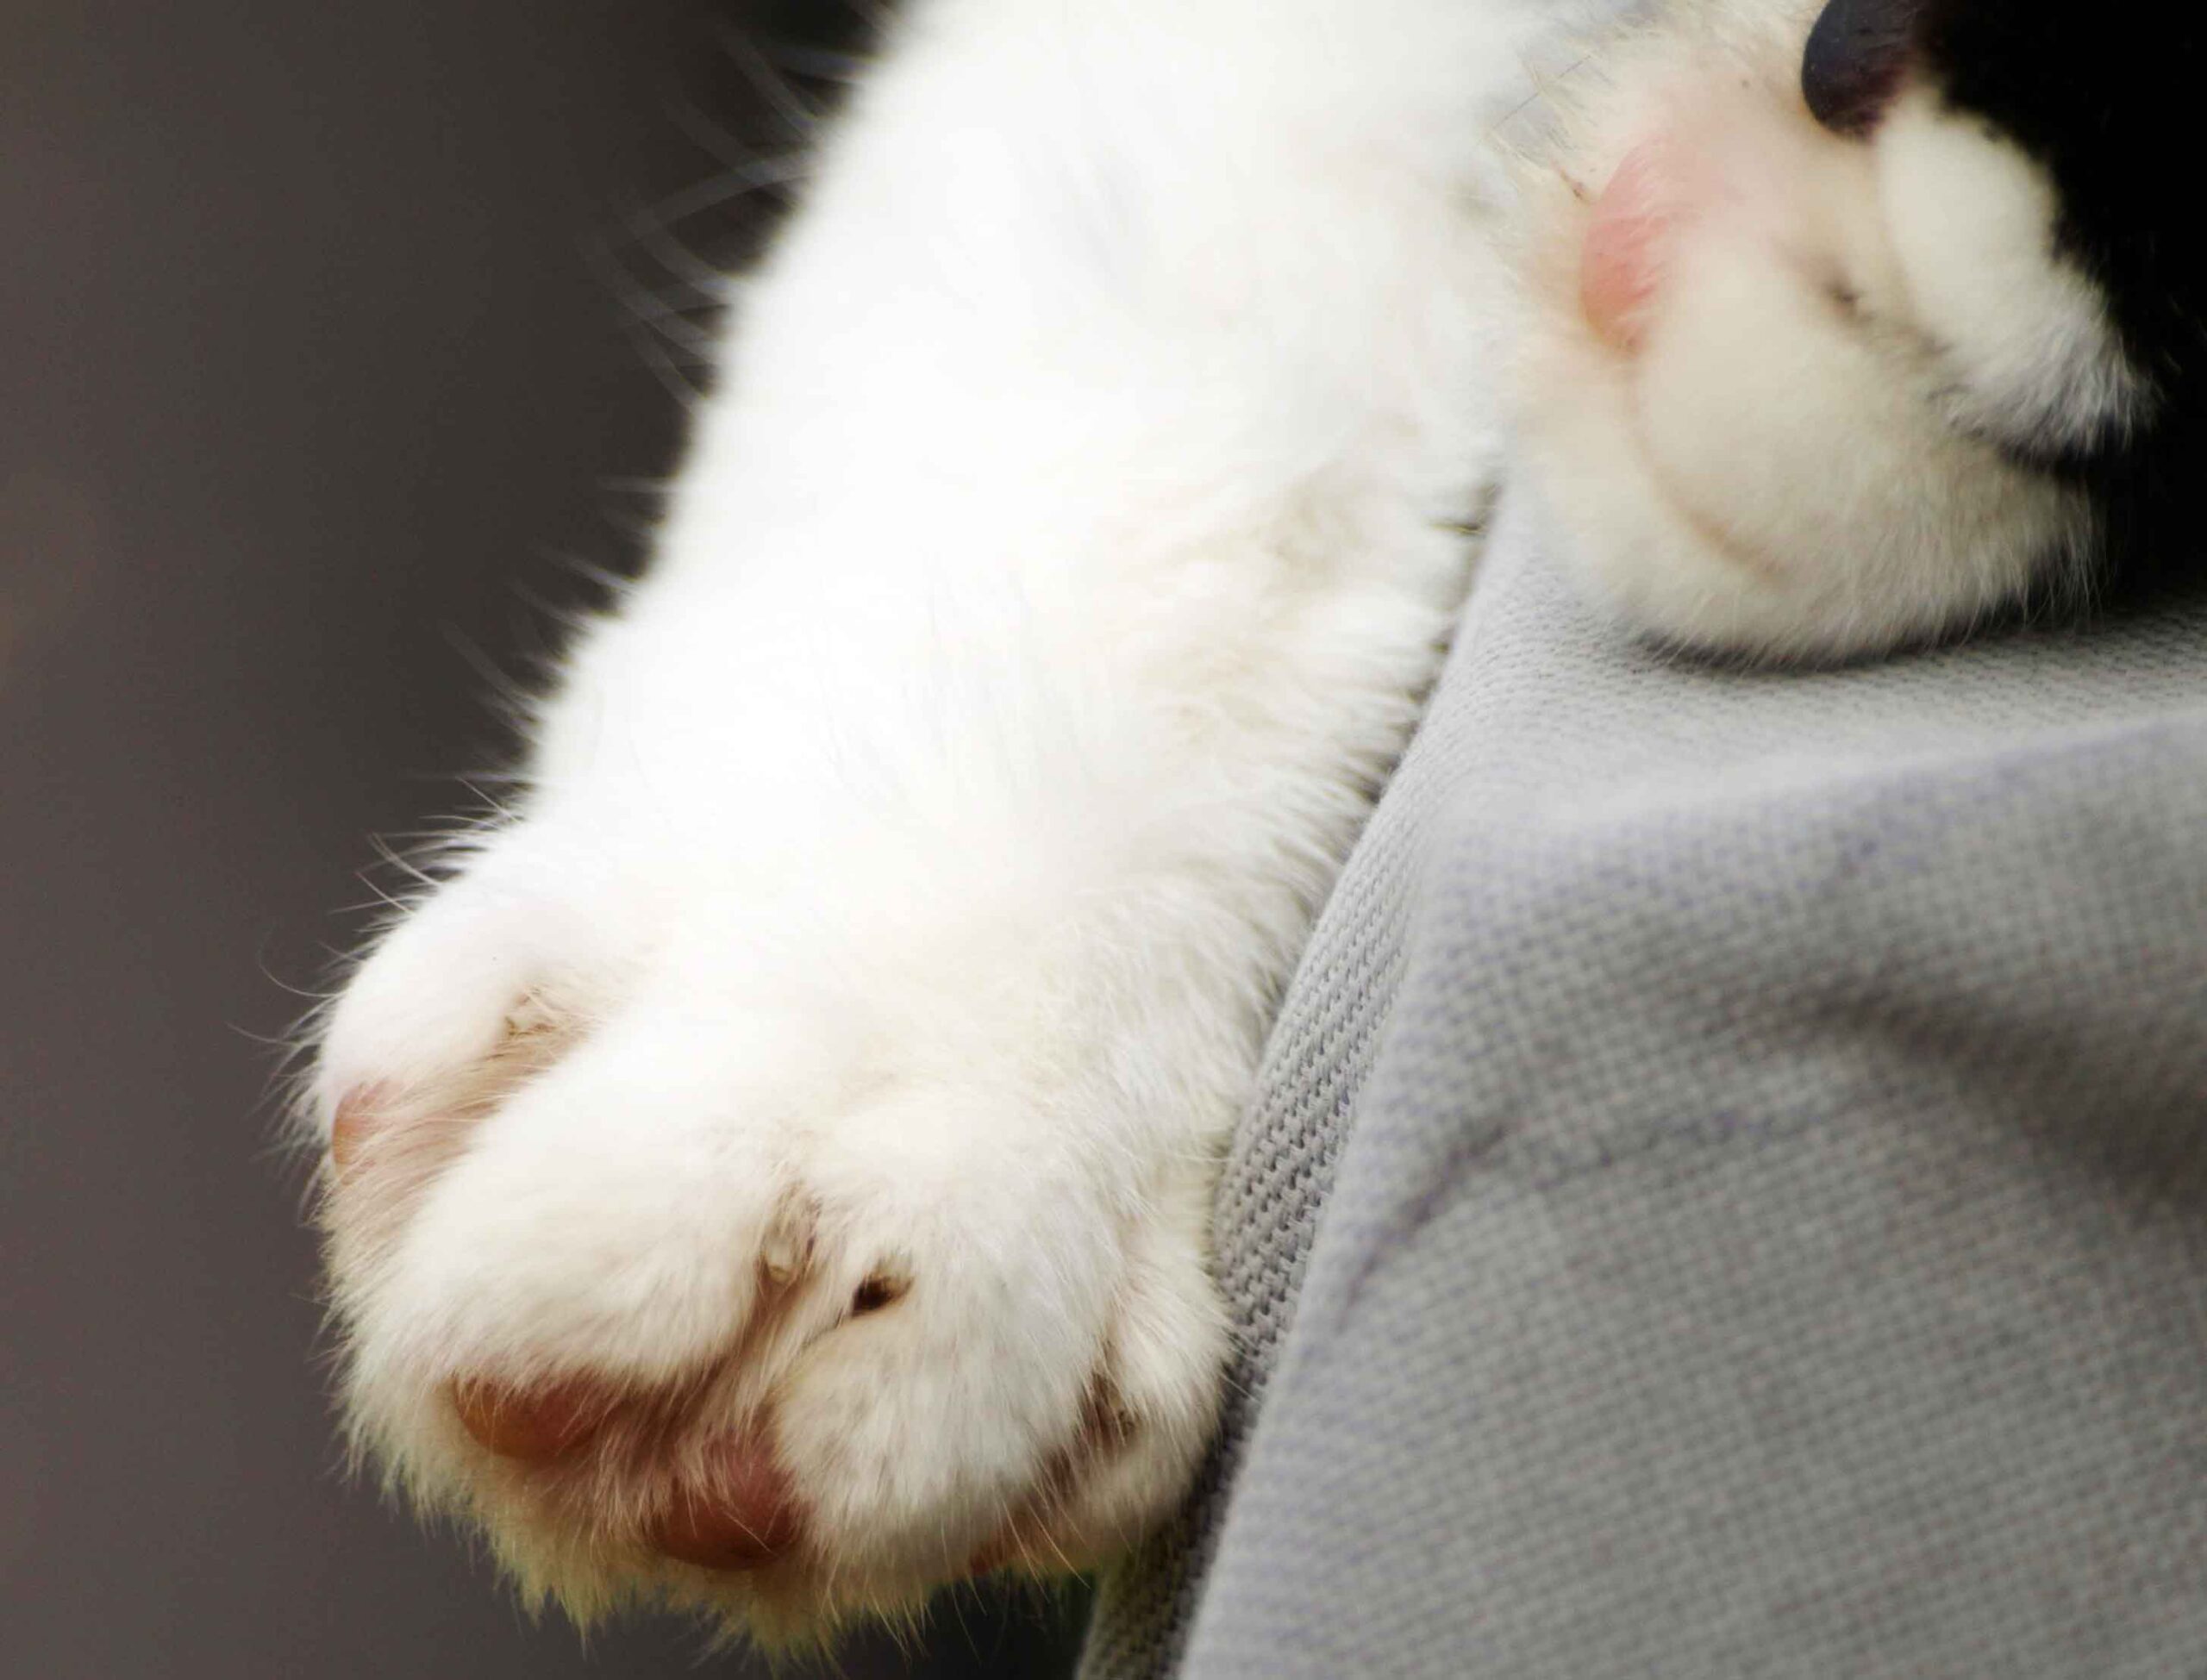 Cat toes